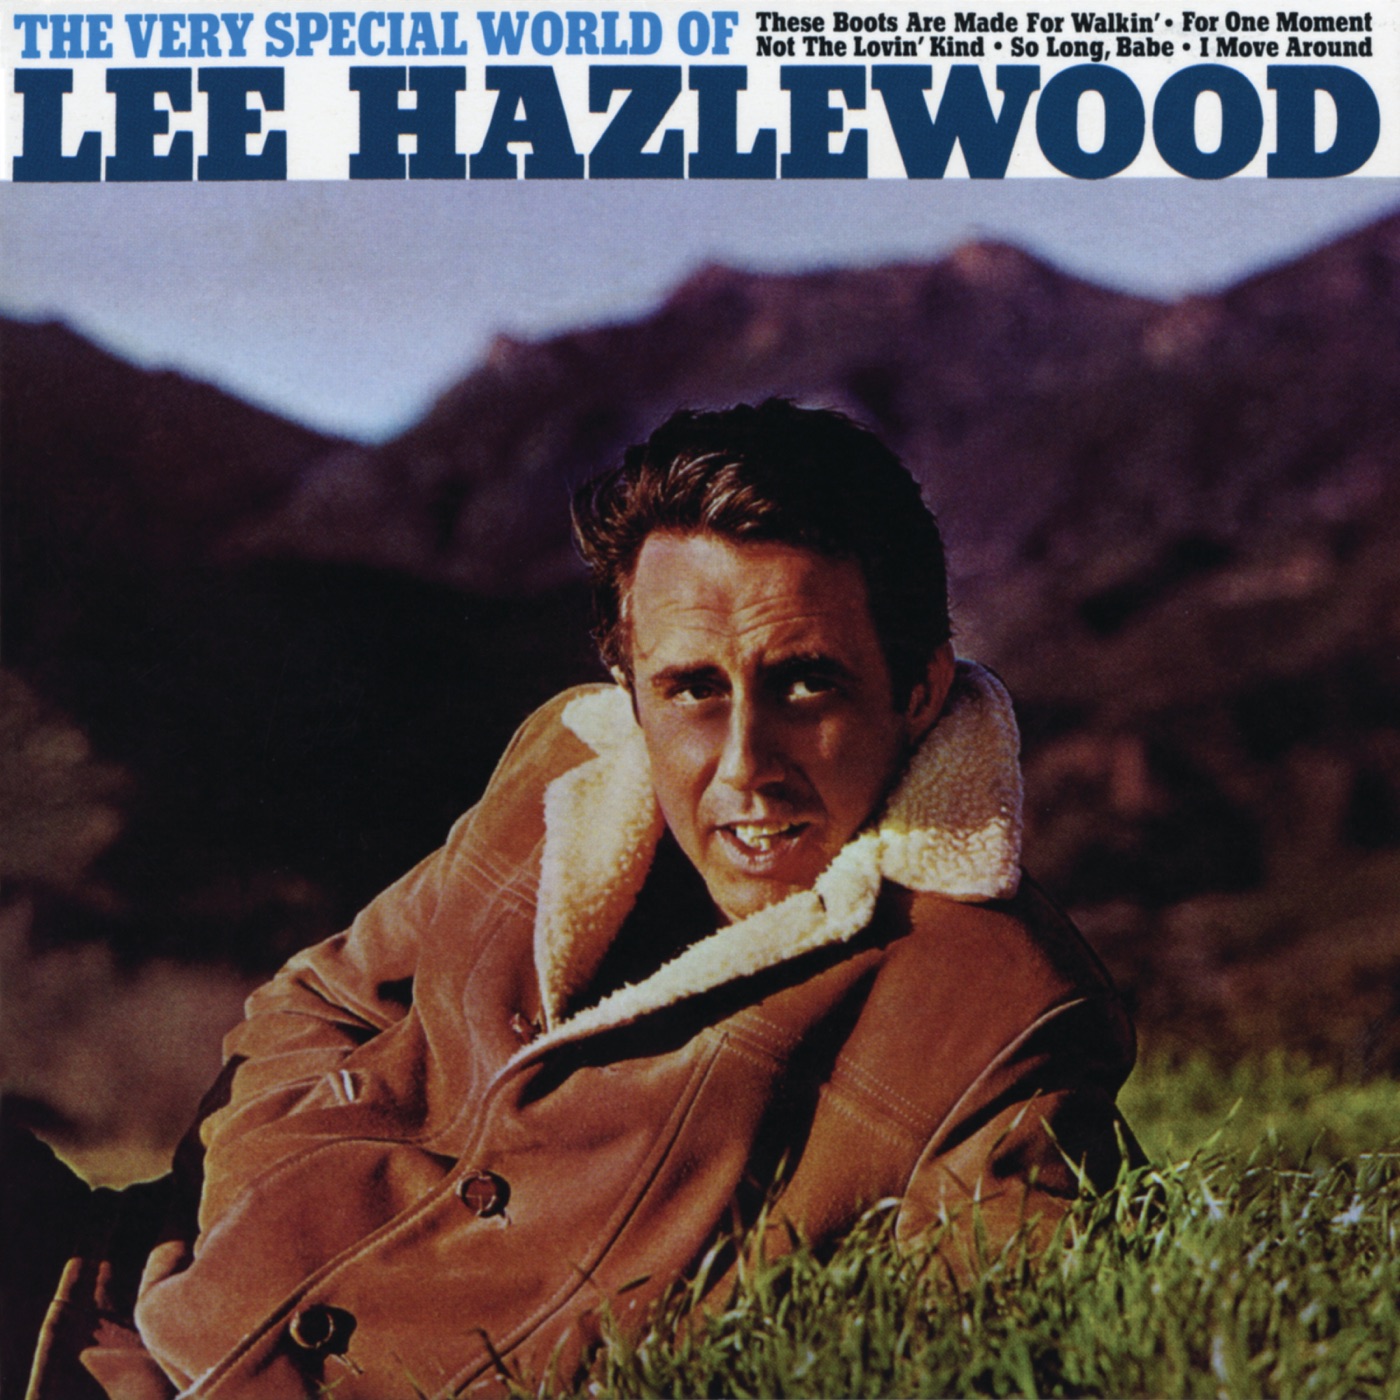 The Very Special World Of Lee Hazlewood by Lee Hazlewood